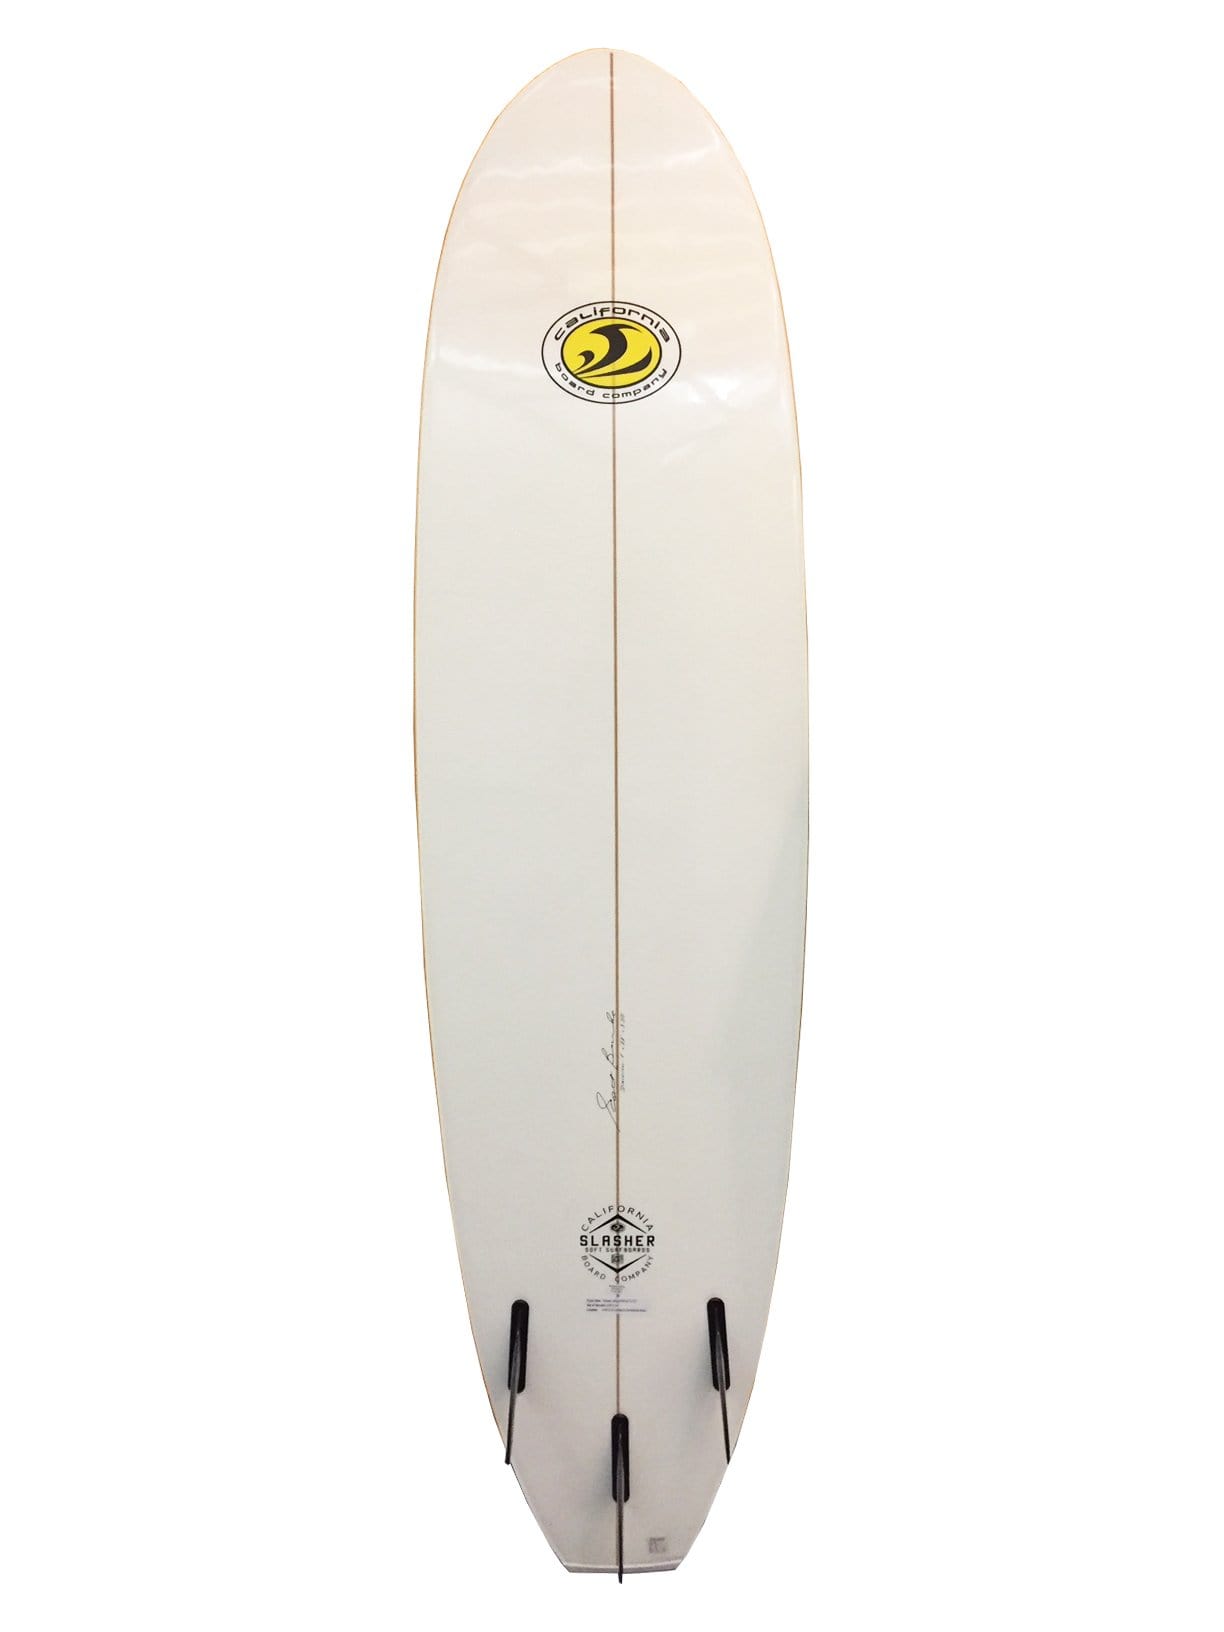 CBC 7'0 Slasher Foam Surfboard deck